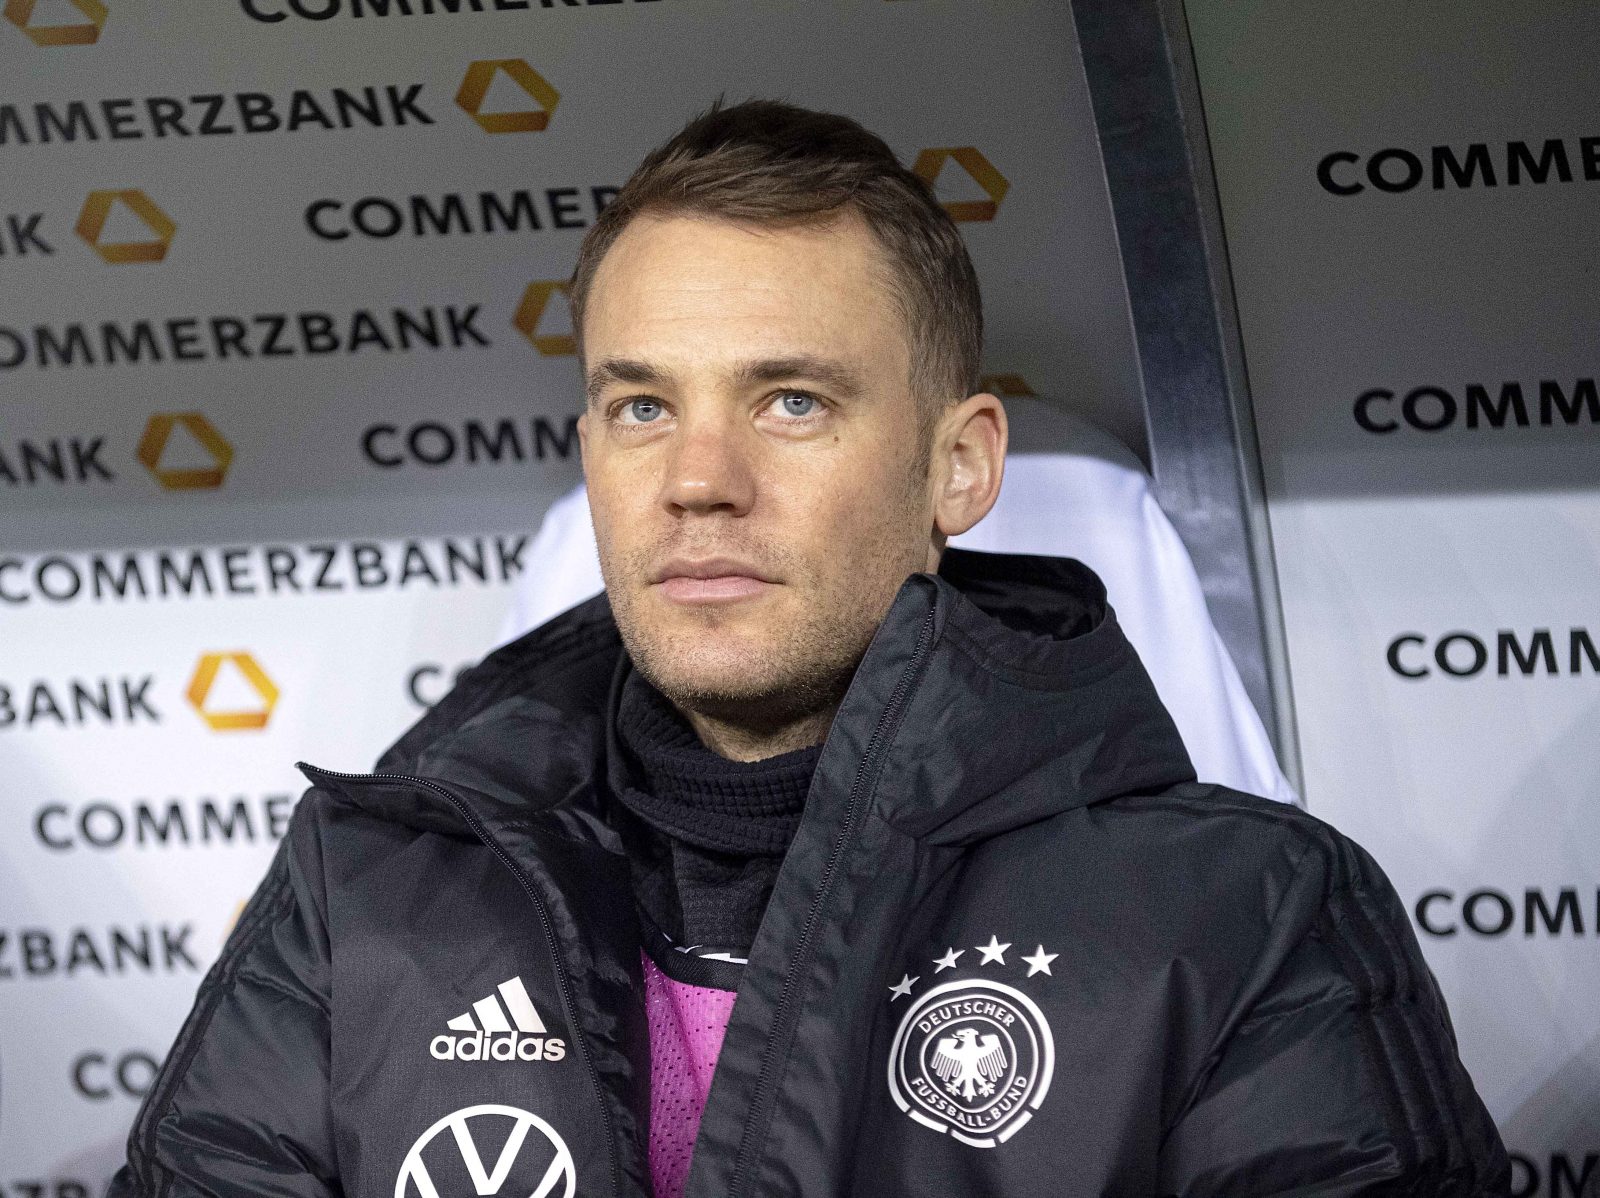 Nach Gesangsvideo Kroatischer Fussballprofi Verteidigt Manuel Neuer